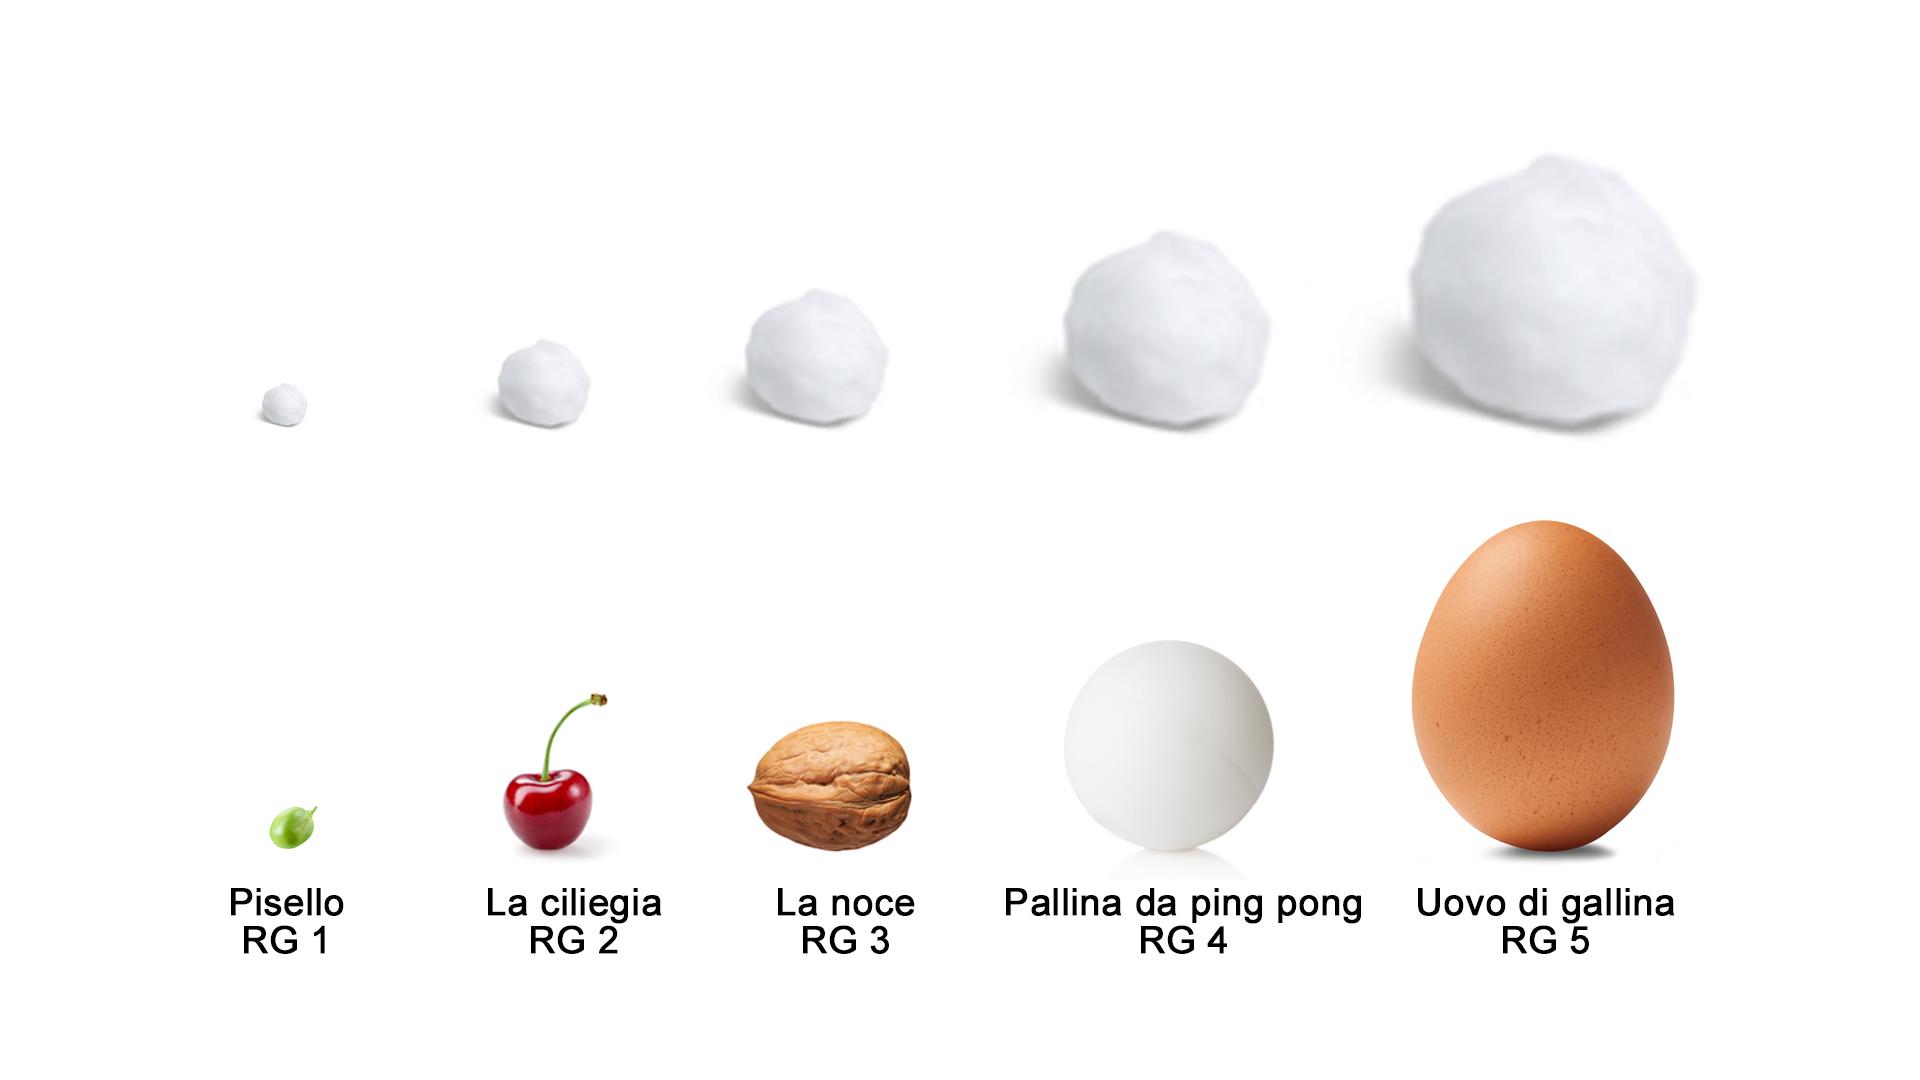 Le dimensioni dei chicchi di grandine sono paragonabili a quelle di piselli, ciliegie, noci, palline da ping pong e uova di gallina.